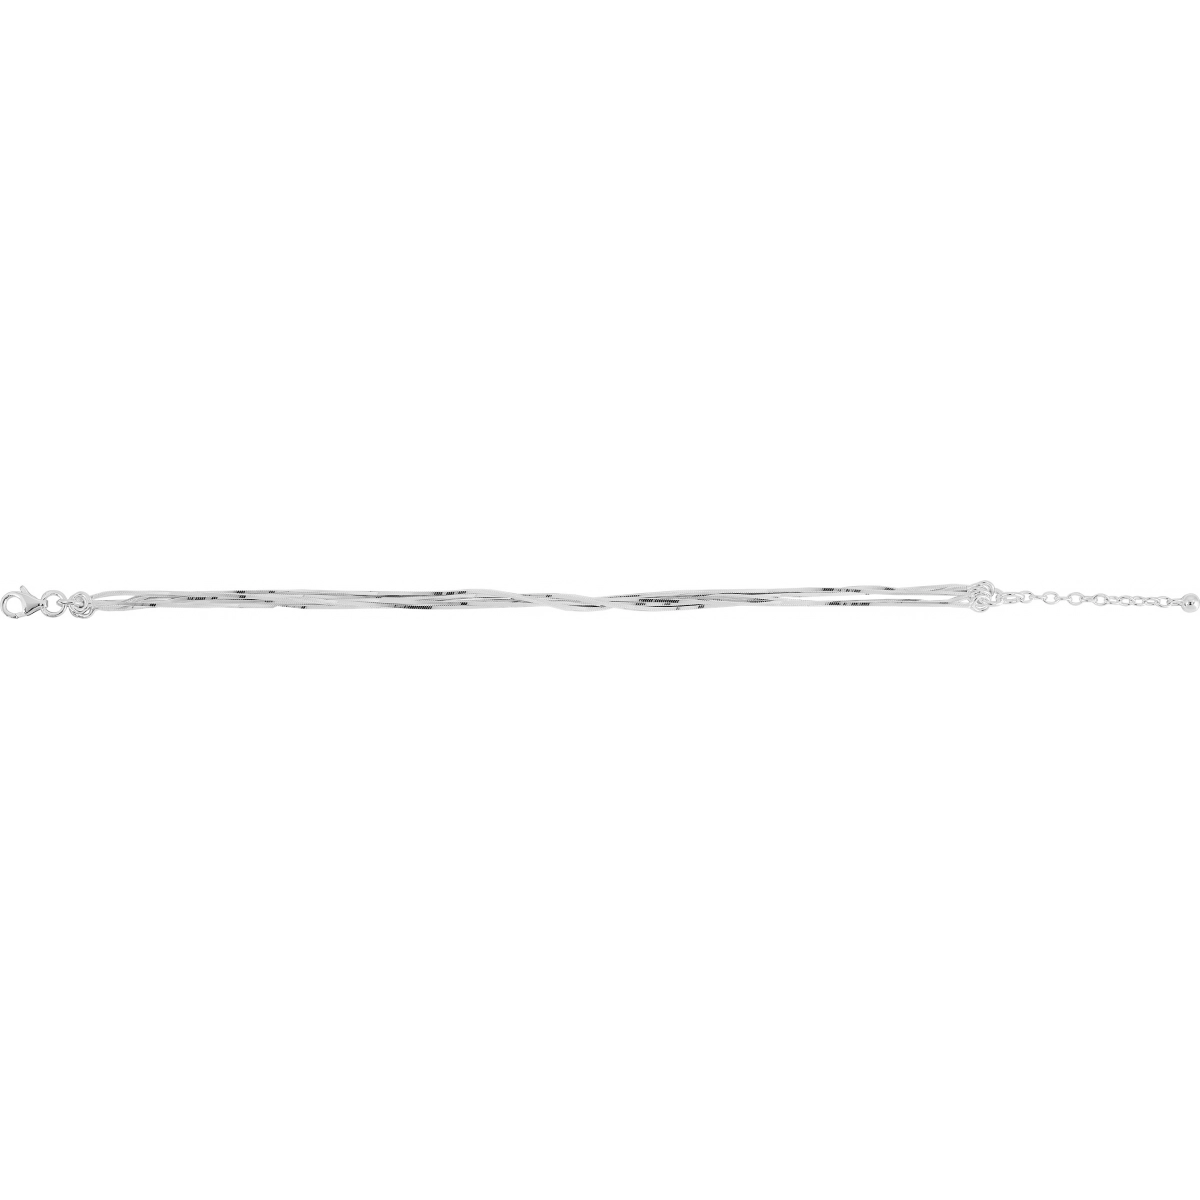 Bracelet rh925 Silver - Size: 18  Lua Blanca  333191.18